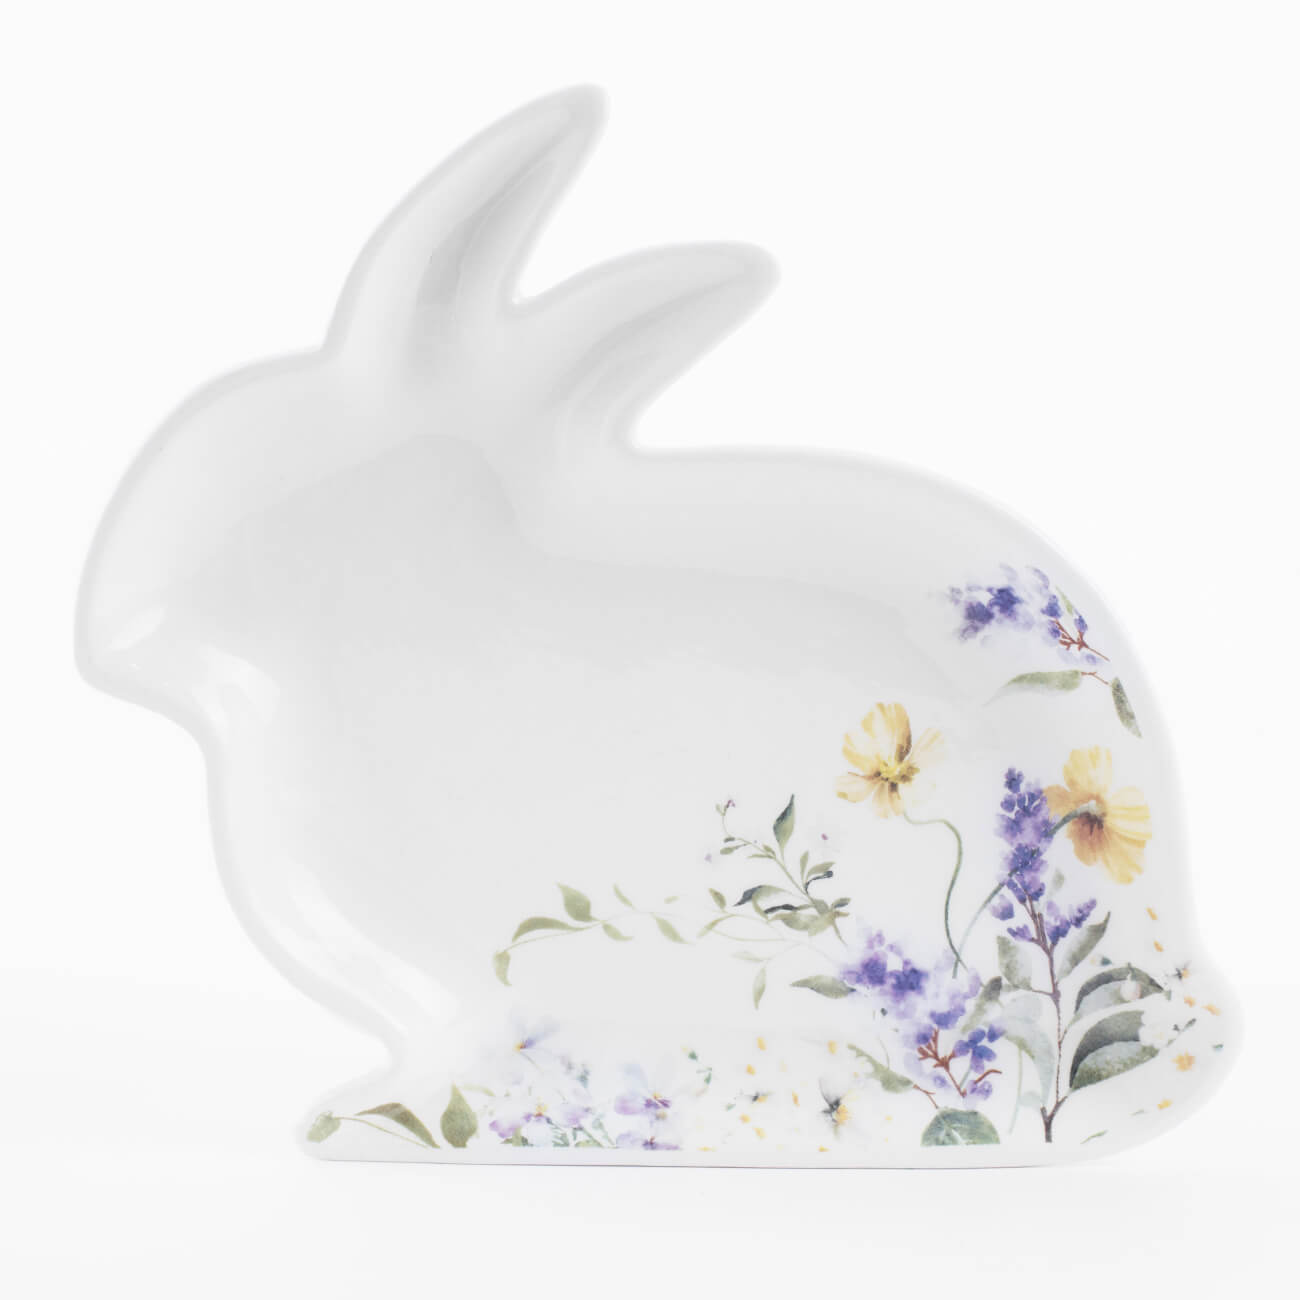 Блюдо, 22х21 см, керамика, белое, Кролик и цветы, Easter блюдо сервировочное 40 см дерево металл кролик natural easter